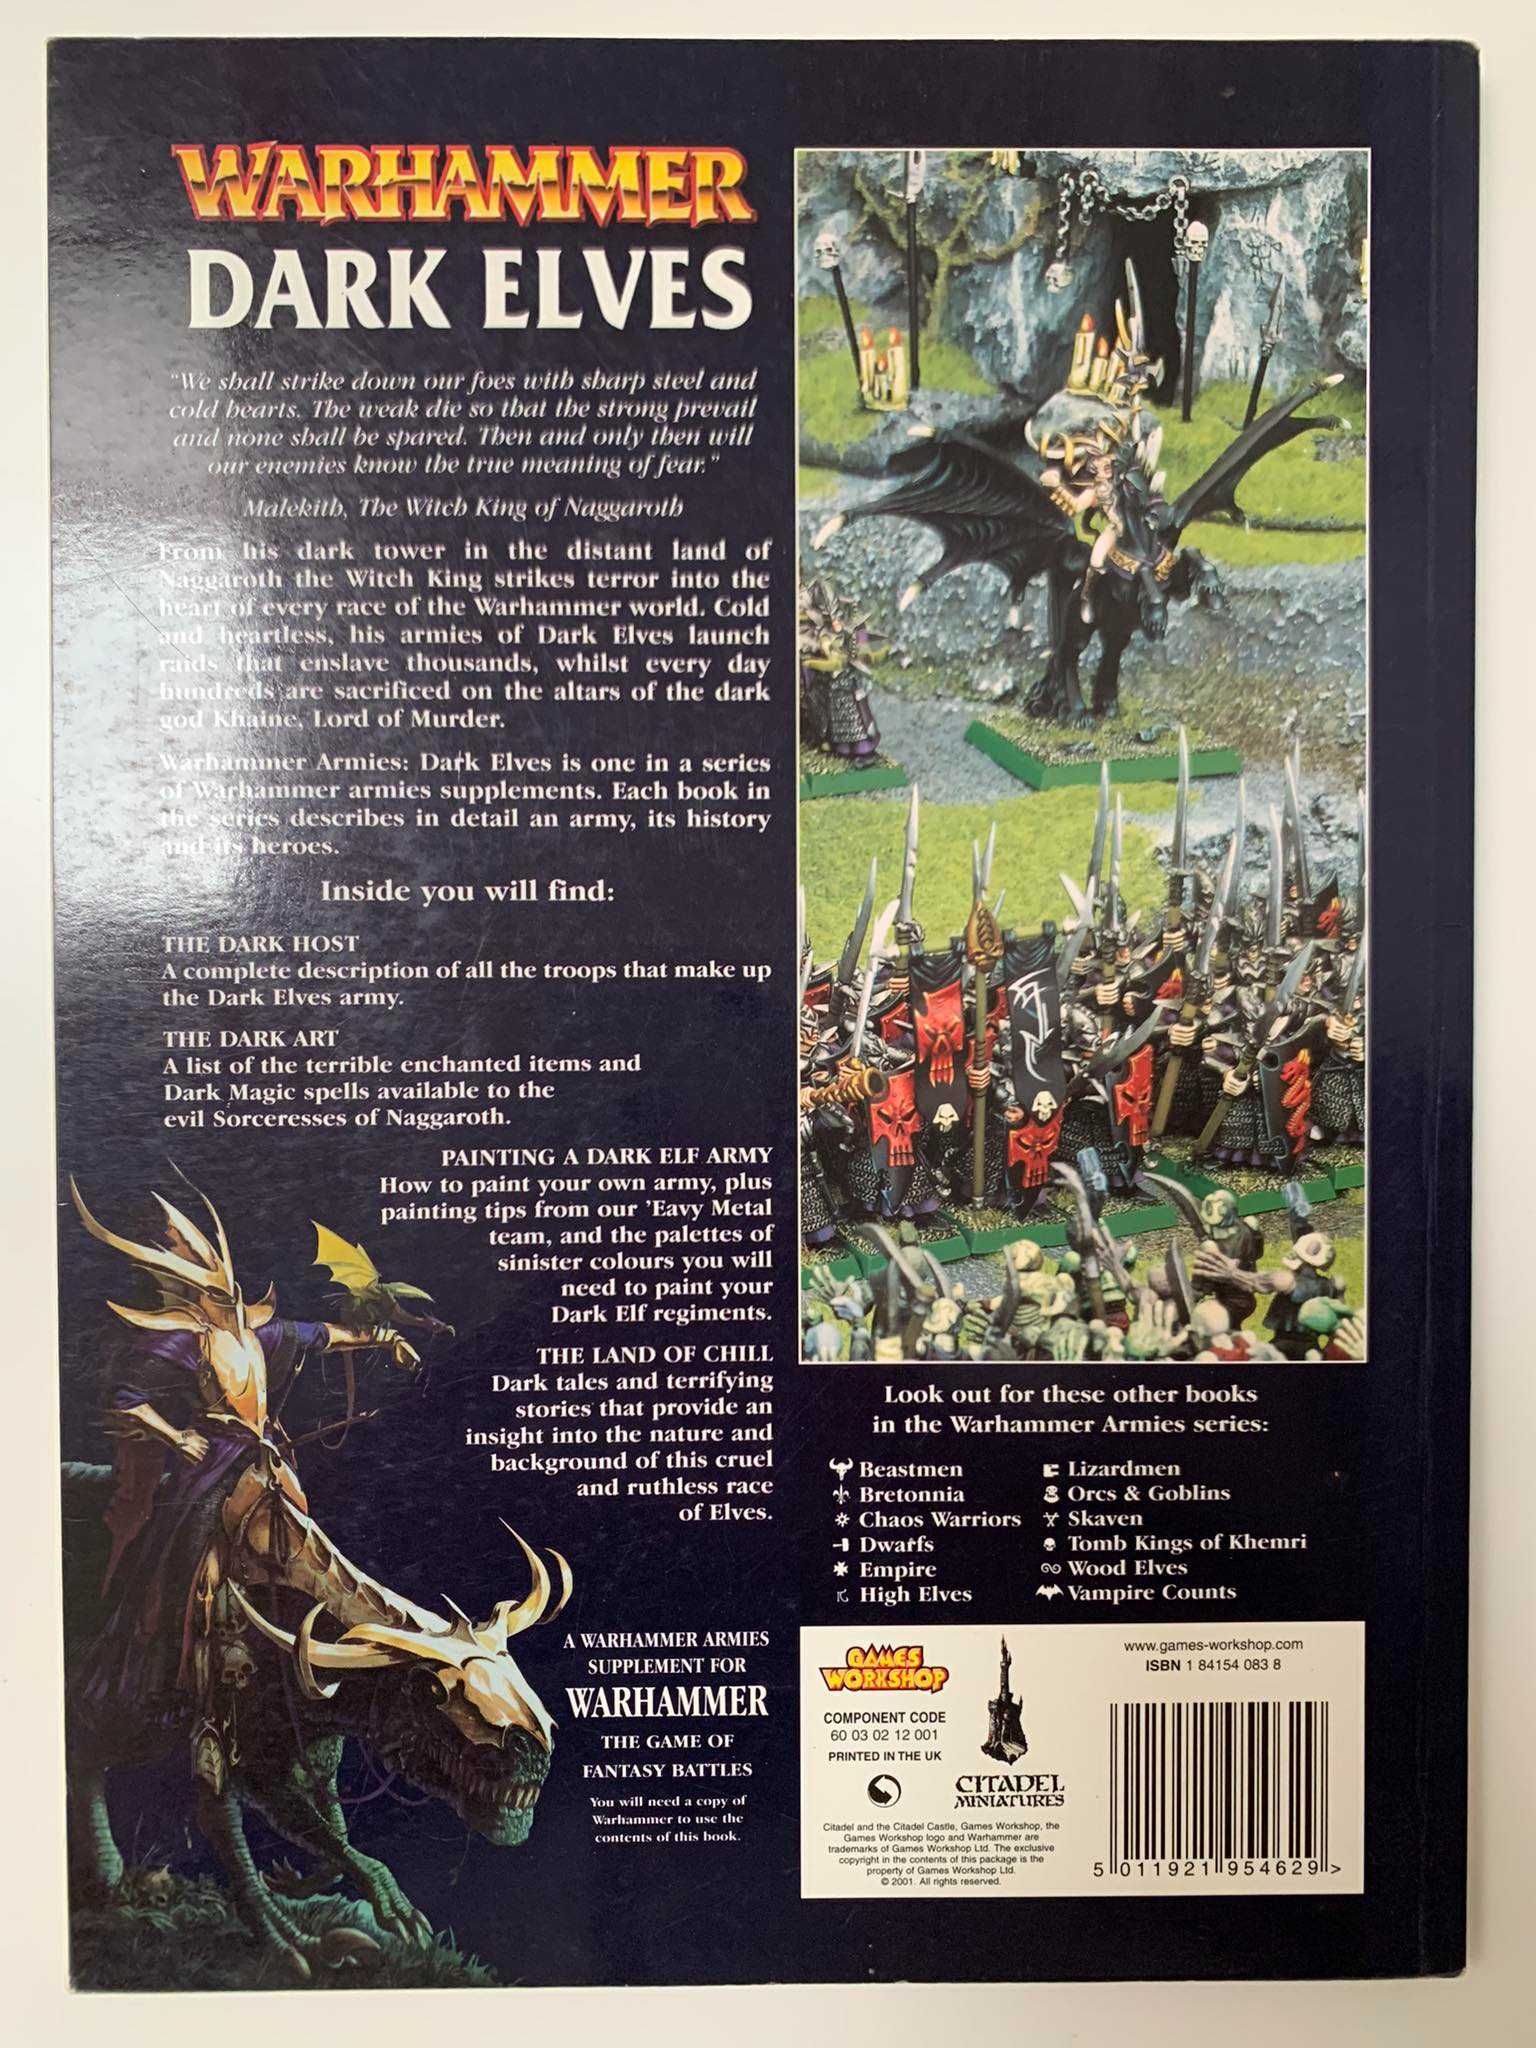 Warhammer Fantasy Battle: Dark Elves - podręcznik, 2001 r.